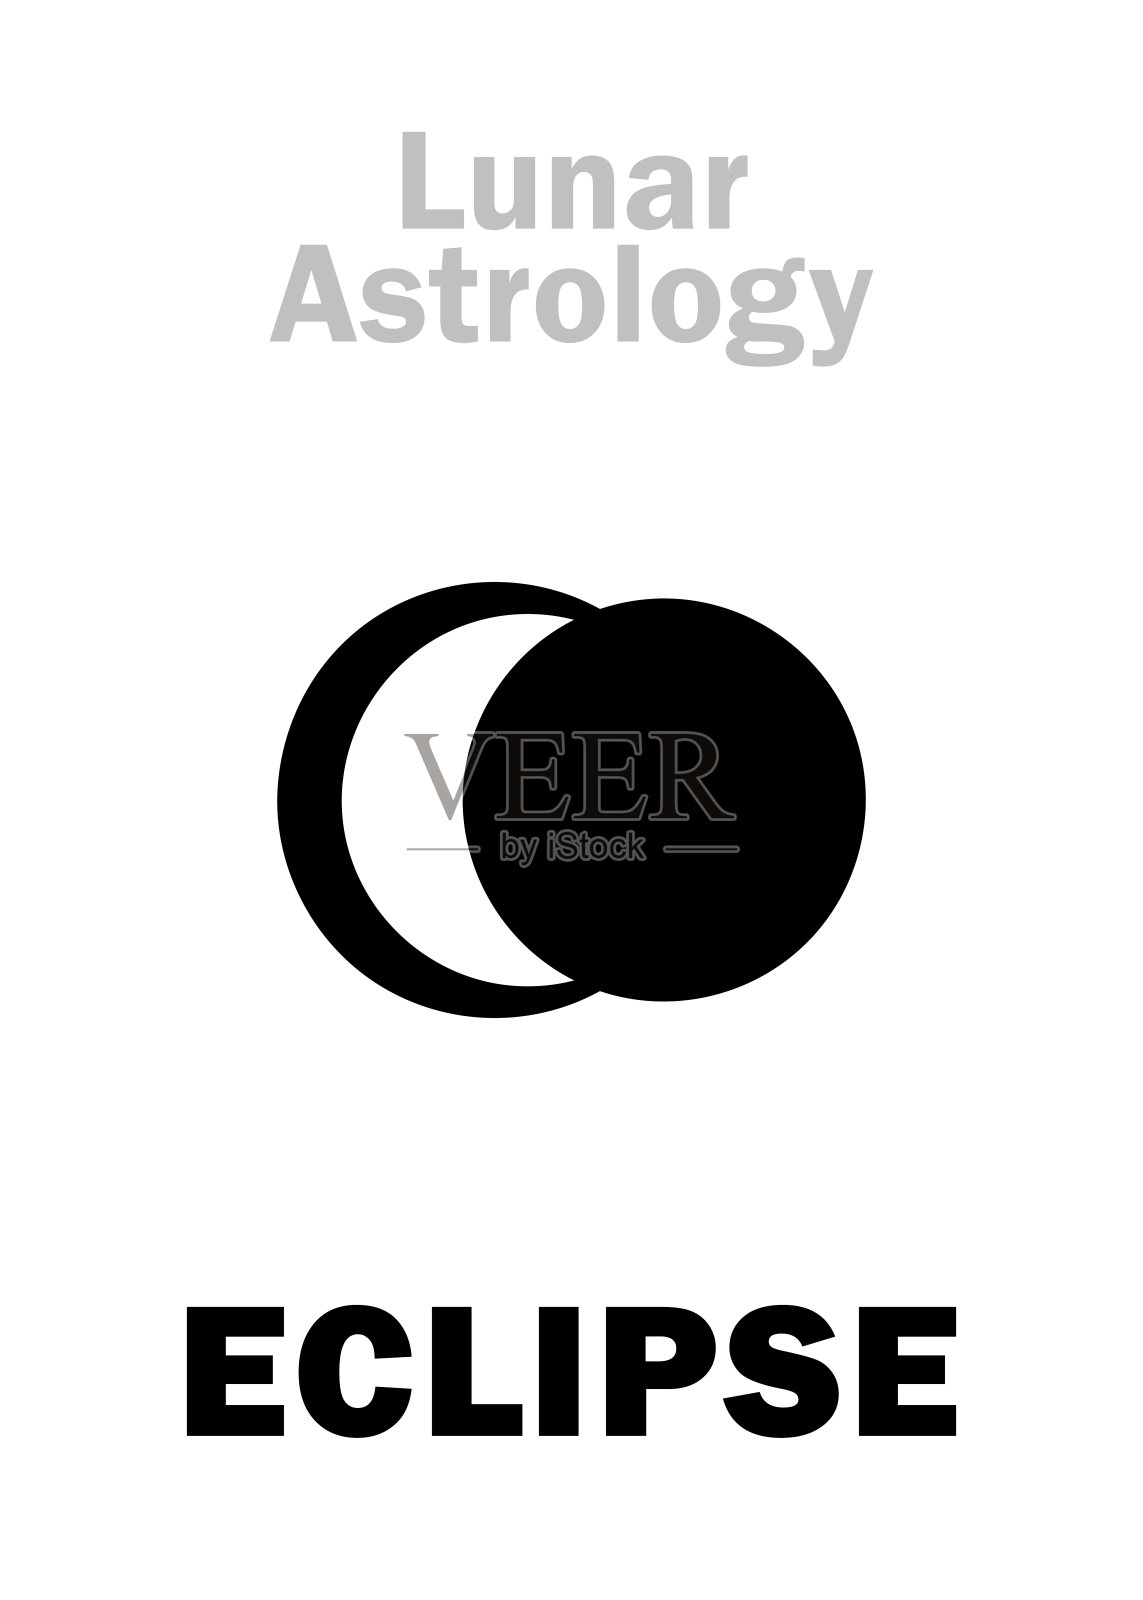 占星字母表:月食、天文现象。象形文字符号(单符号)。插画图片素材